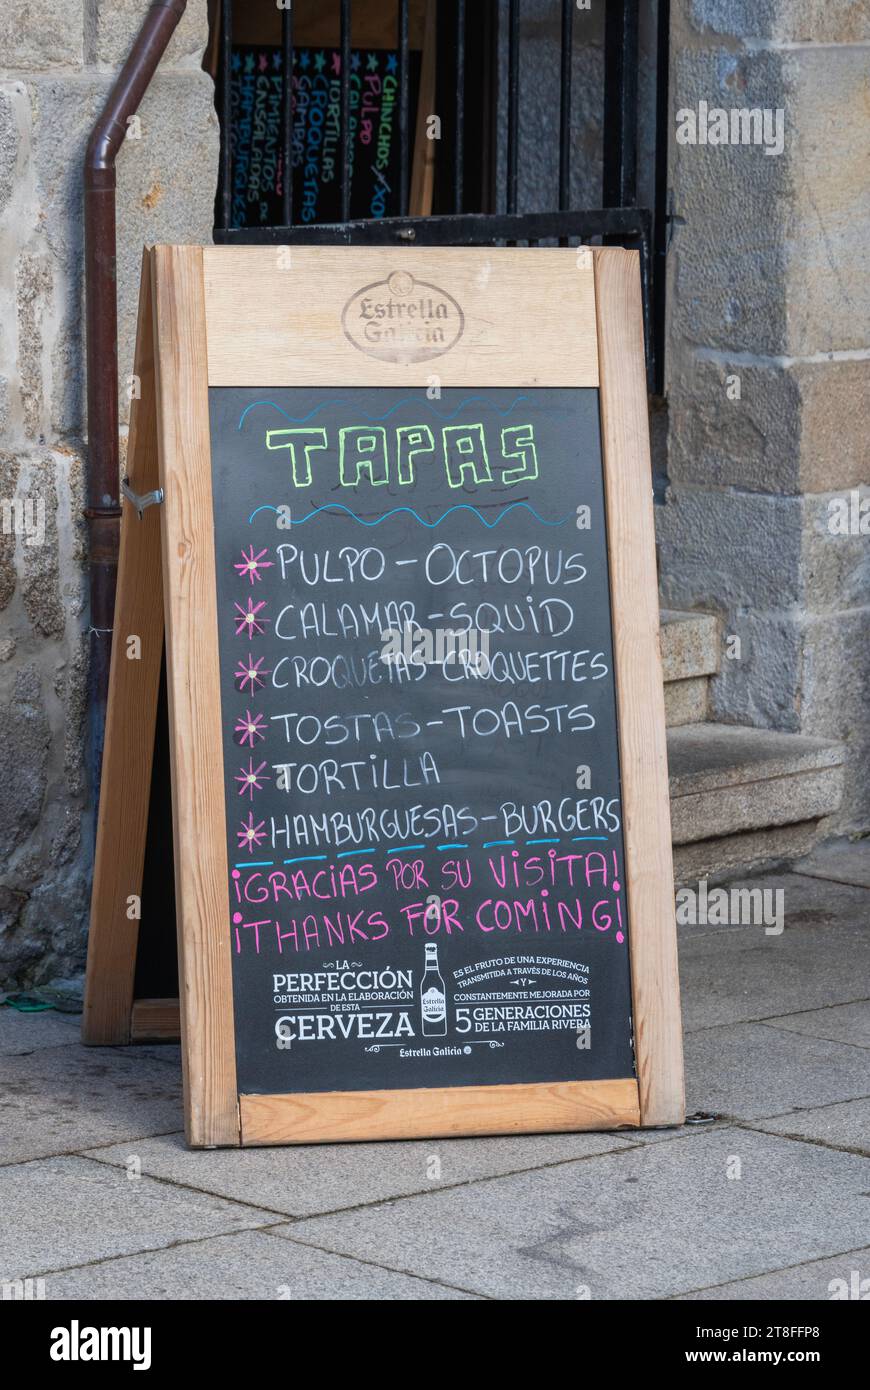 Menu on blackboard advertising Tapas in Port of Vigo, Spain Stock Photo